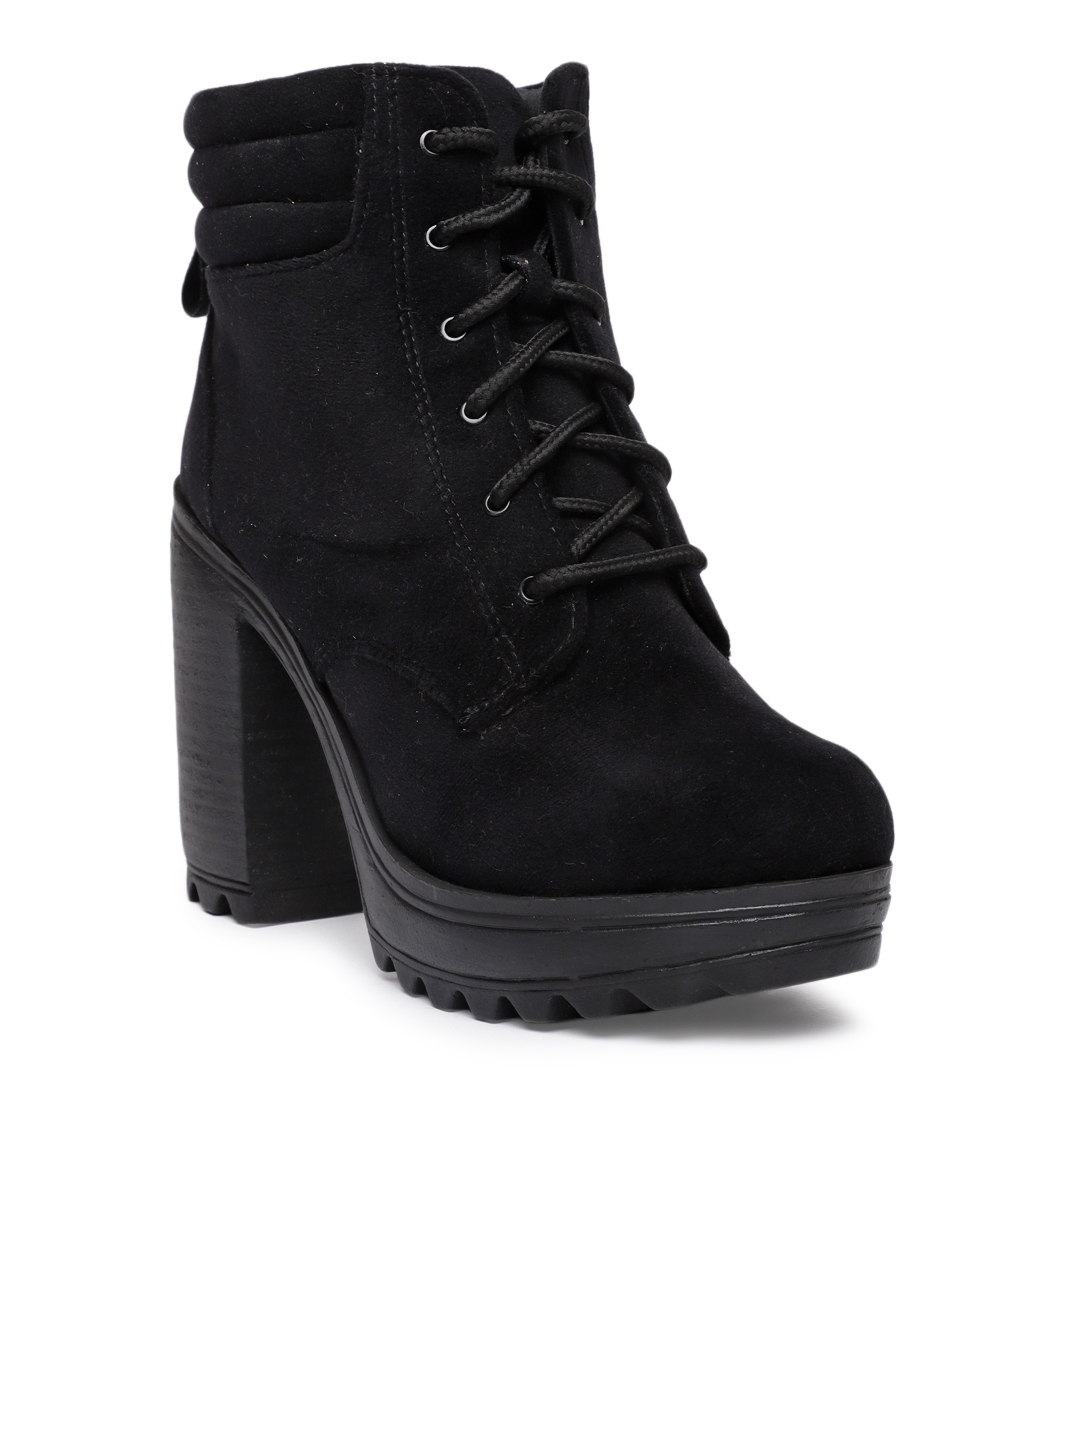 MIISTA DIONIRA BOOTS - High heeled boots - black - Zalando.ie-hkpdtq2012.edu.vn